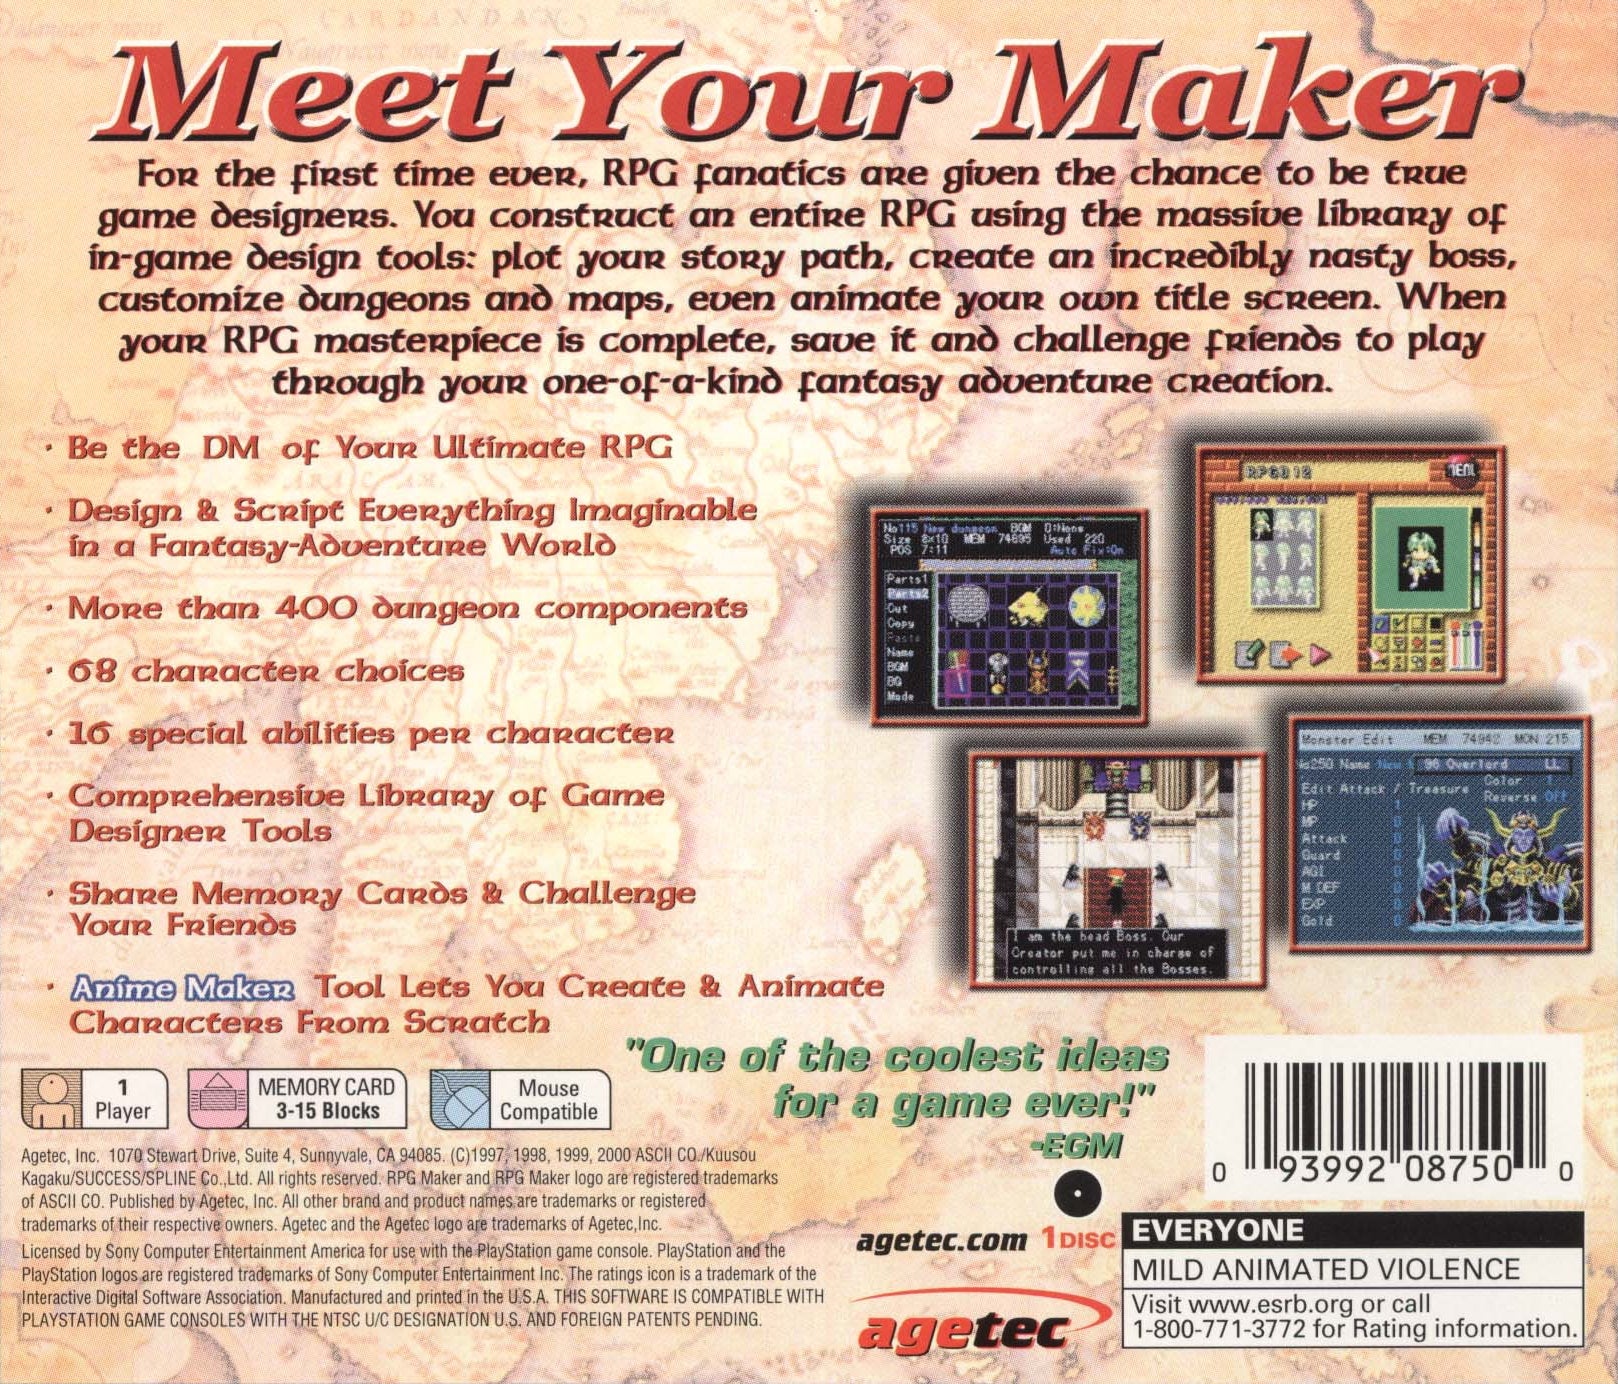 RPG Maker - PlayStation 1 (PS1) Game